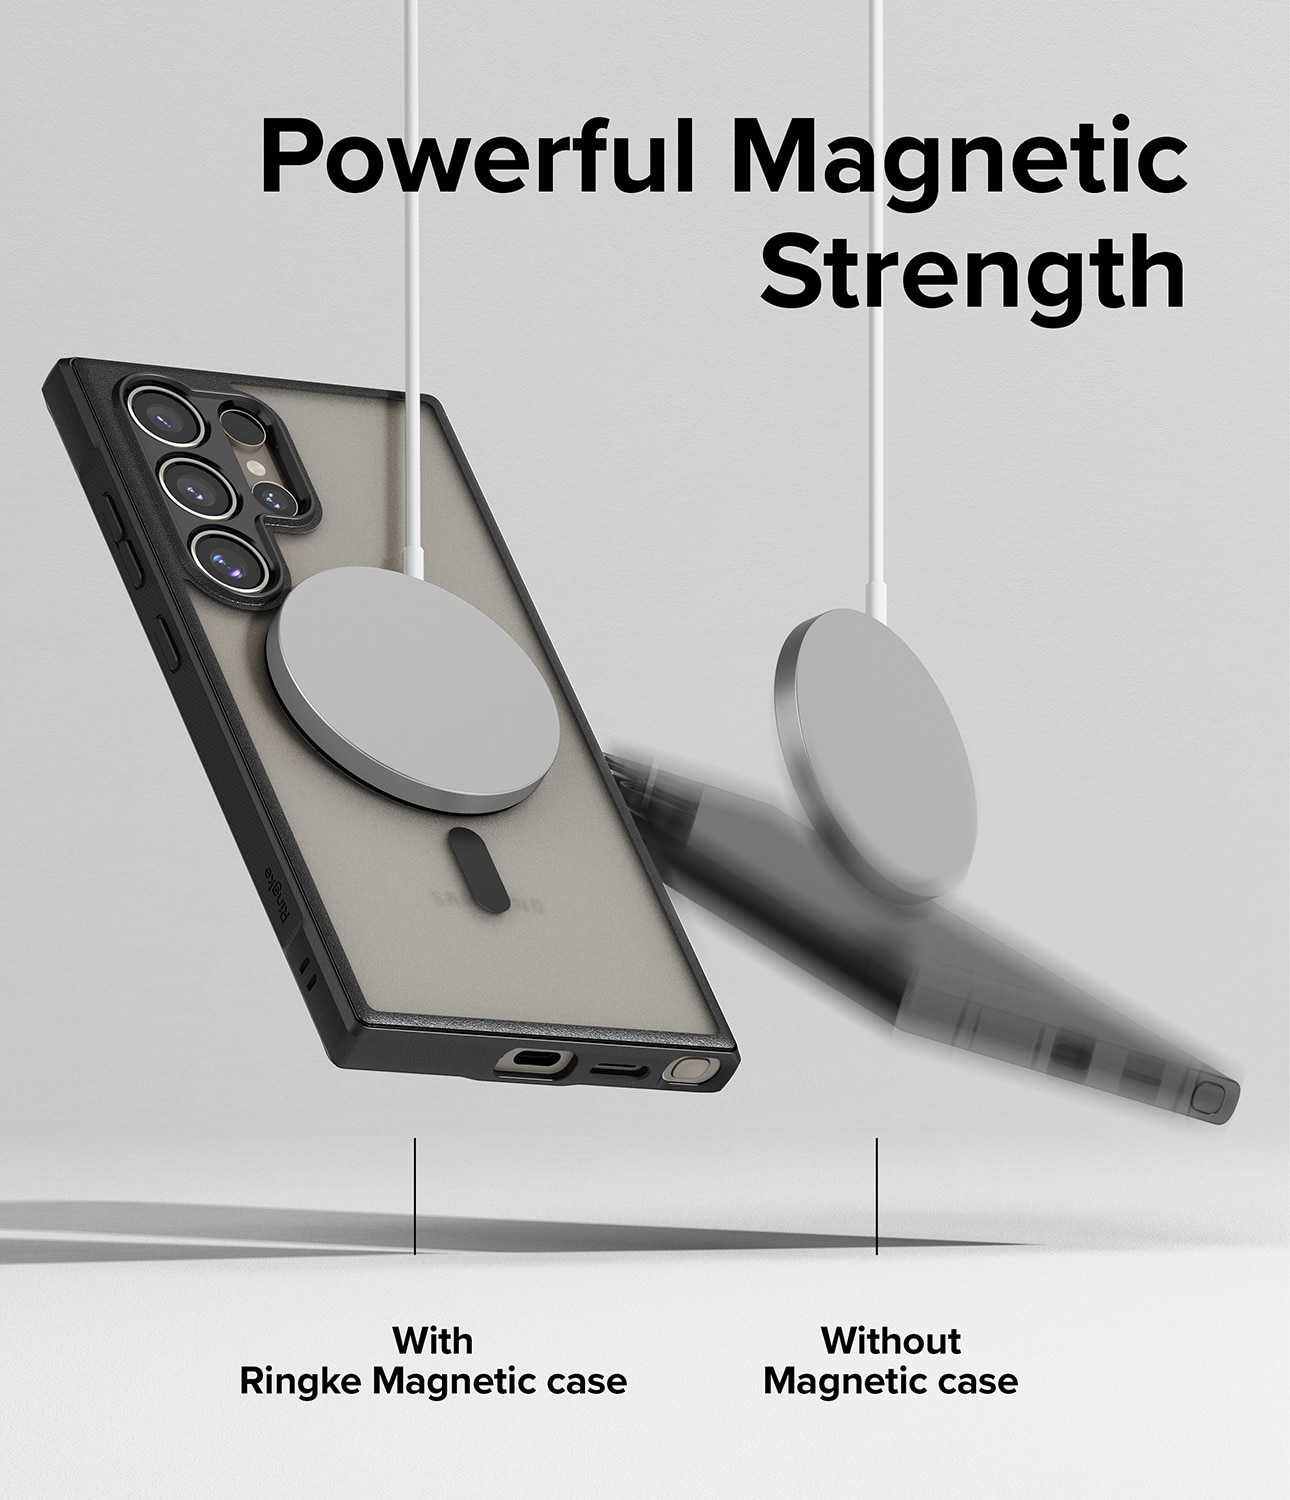 Samsung Galaxy S24 Ultra Fusion Bold MagSafe Skal, svart